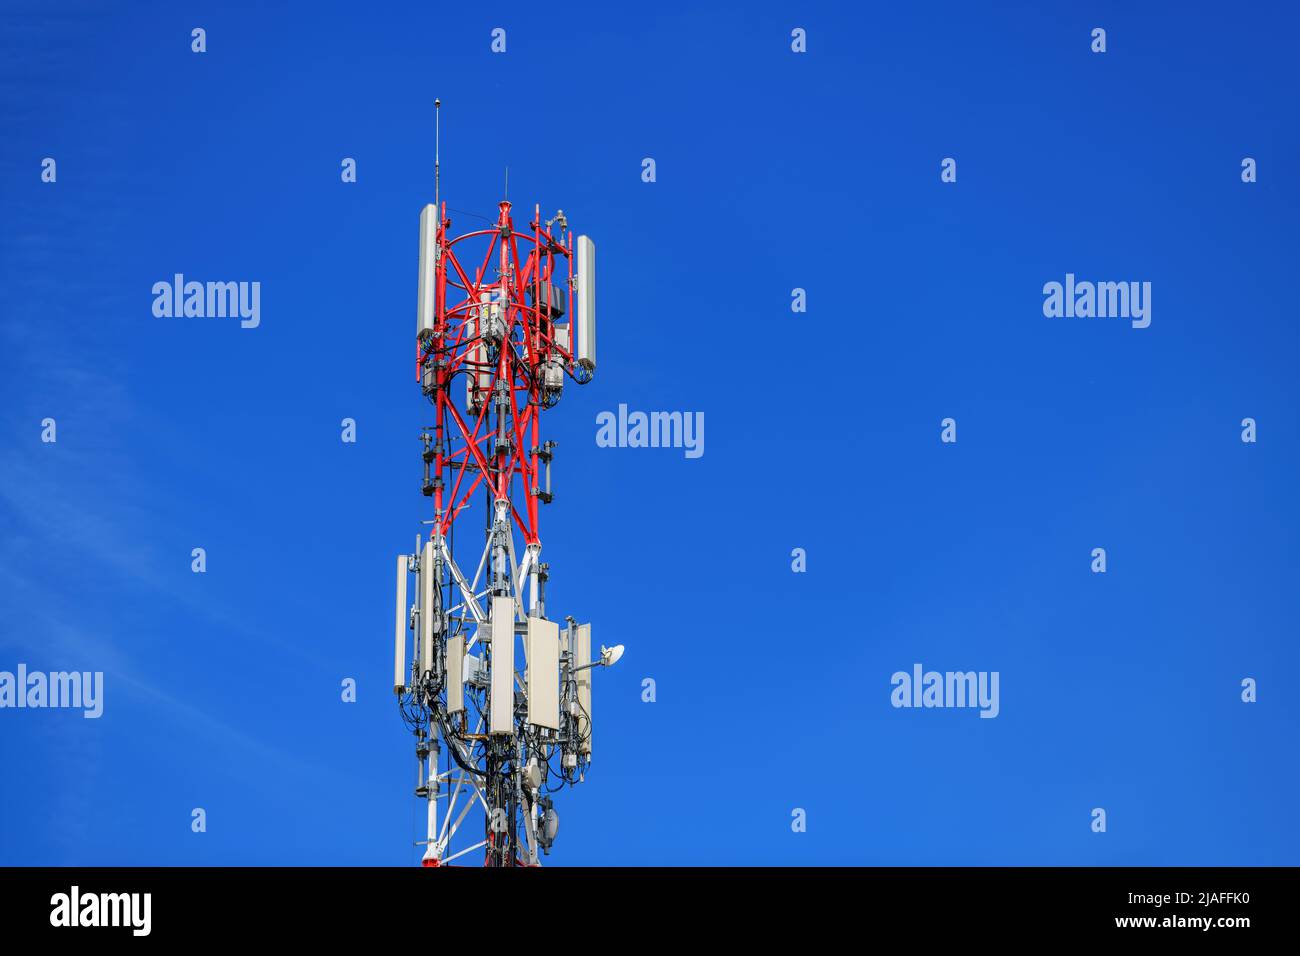 Pilón de telecomunicaciones con repetidores de señal y antenas contra el cielo azul para tecnología inalámbrica y concepto de la industria de radiodifusión, espacio de copia incluido Foto de stock